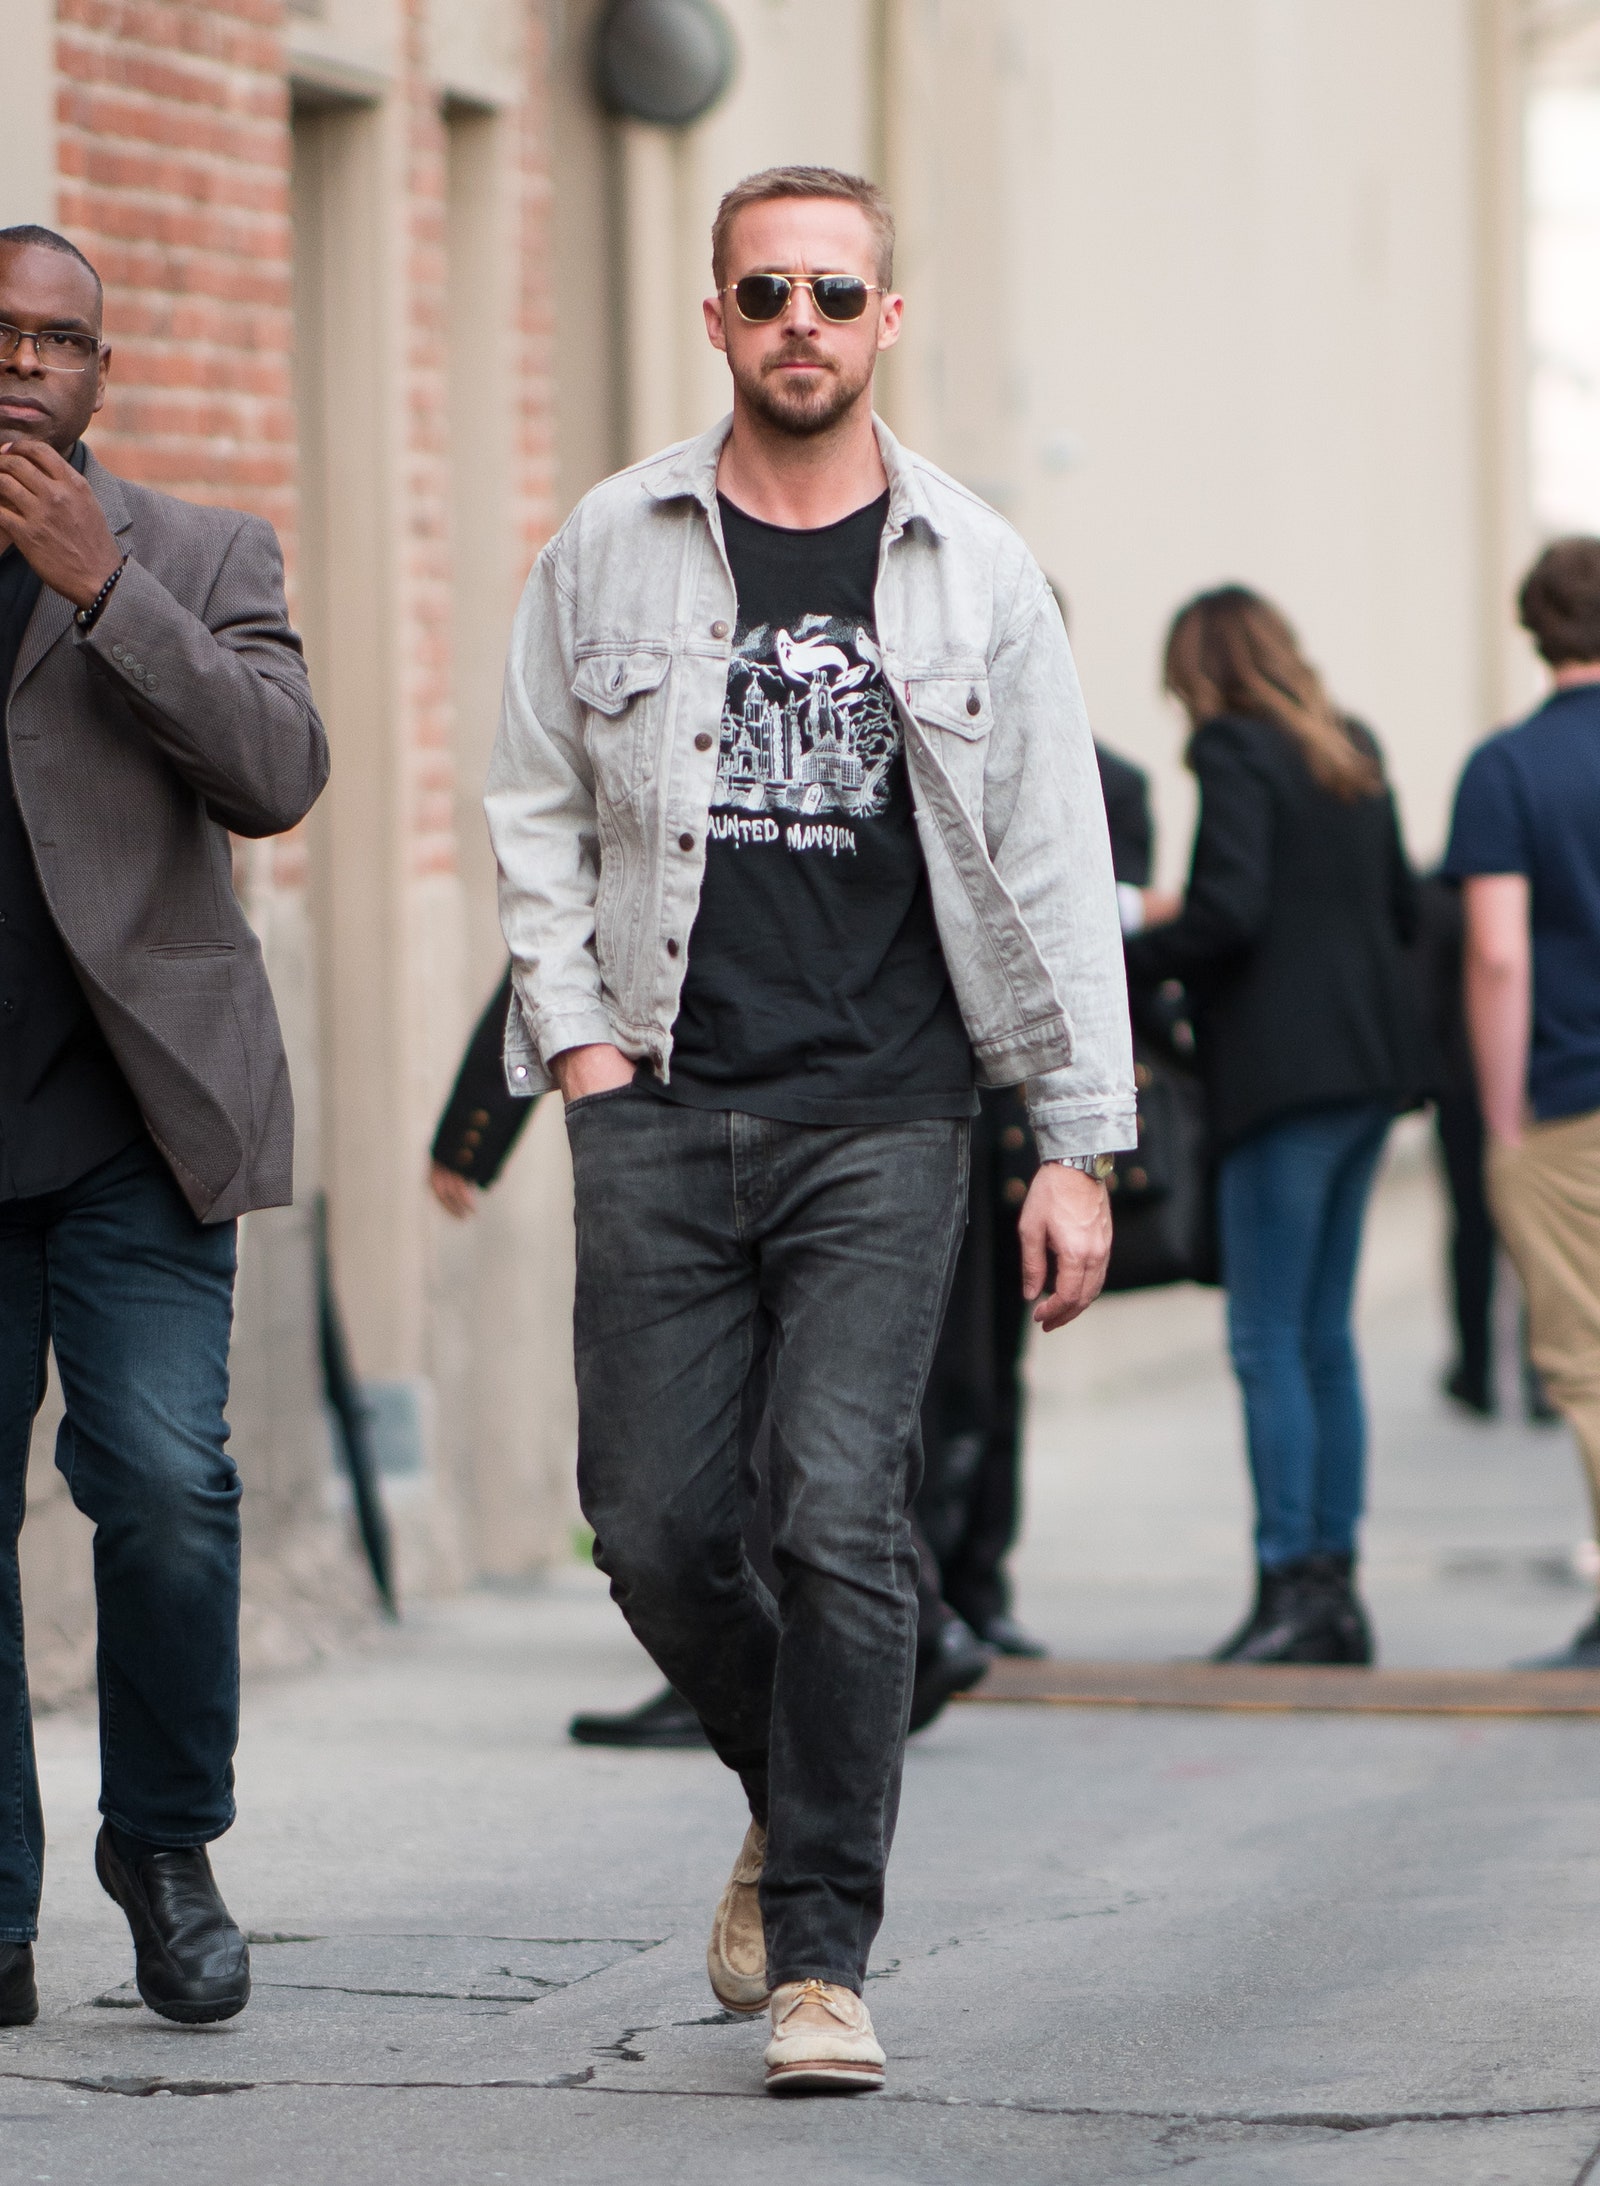 Ryan Gosling usa jeans, botas, chaqueta de mezclilla y lentes de sol.